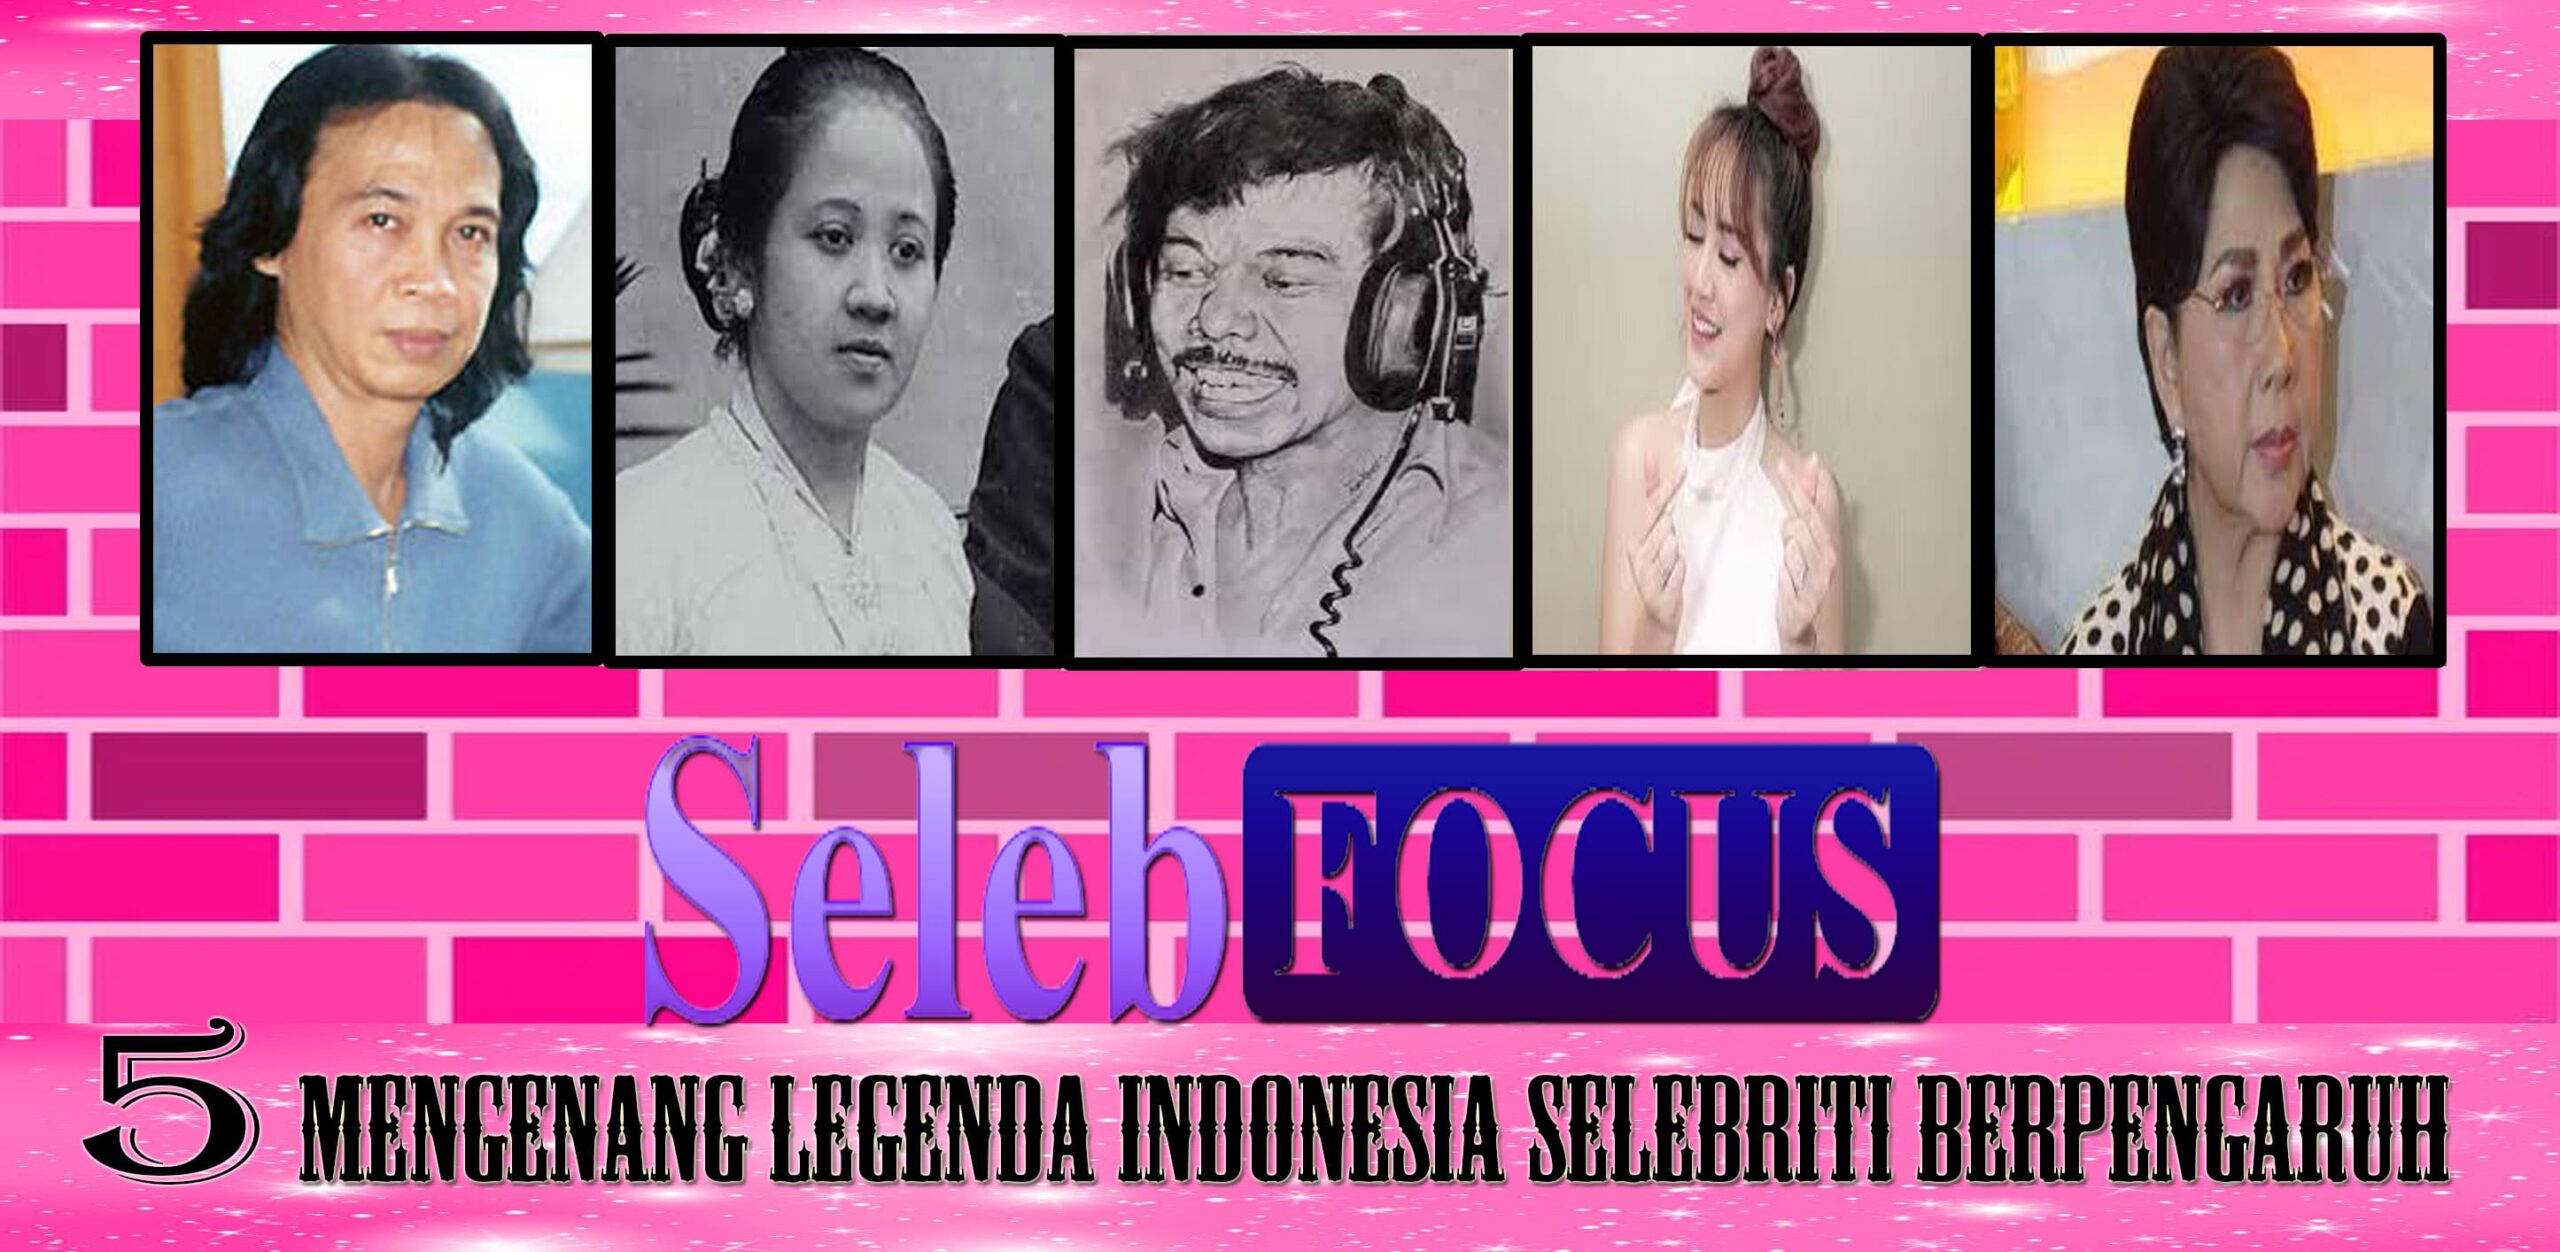 Mengenang Legenda Indonesia